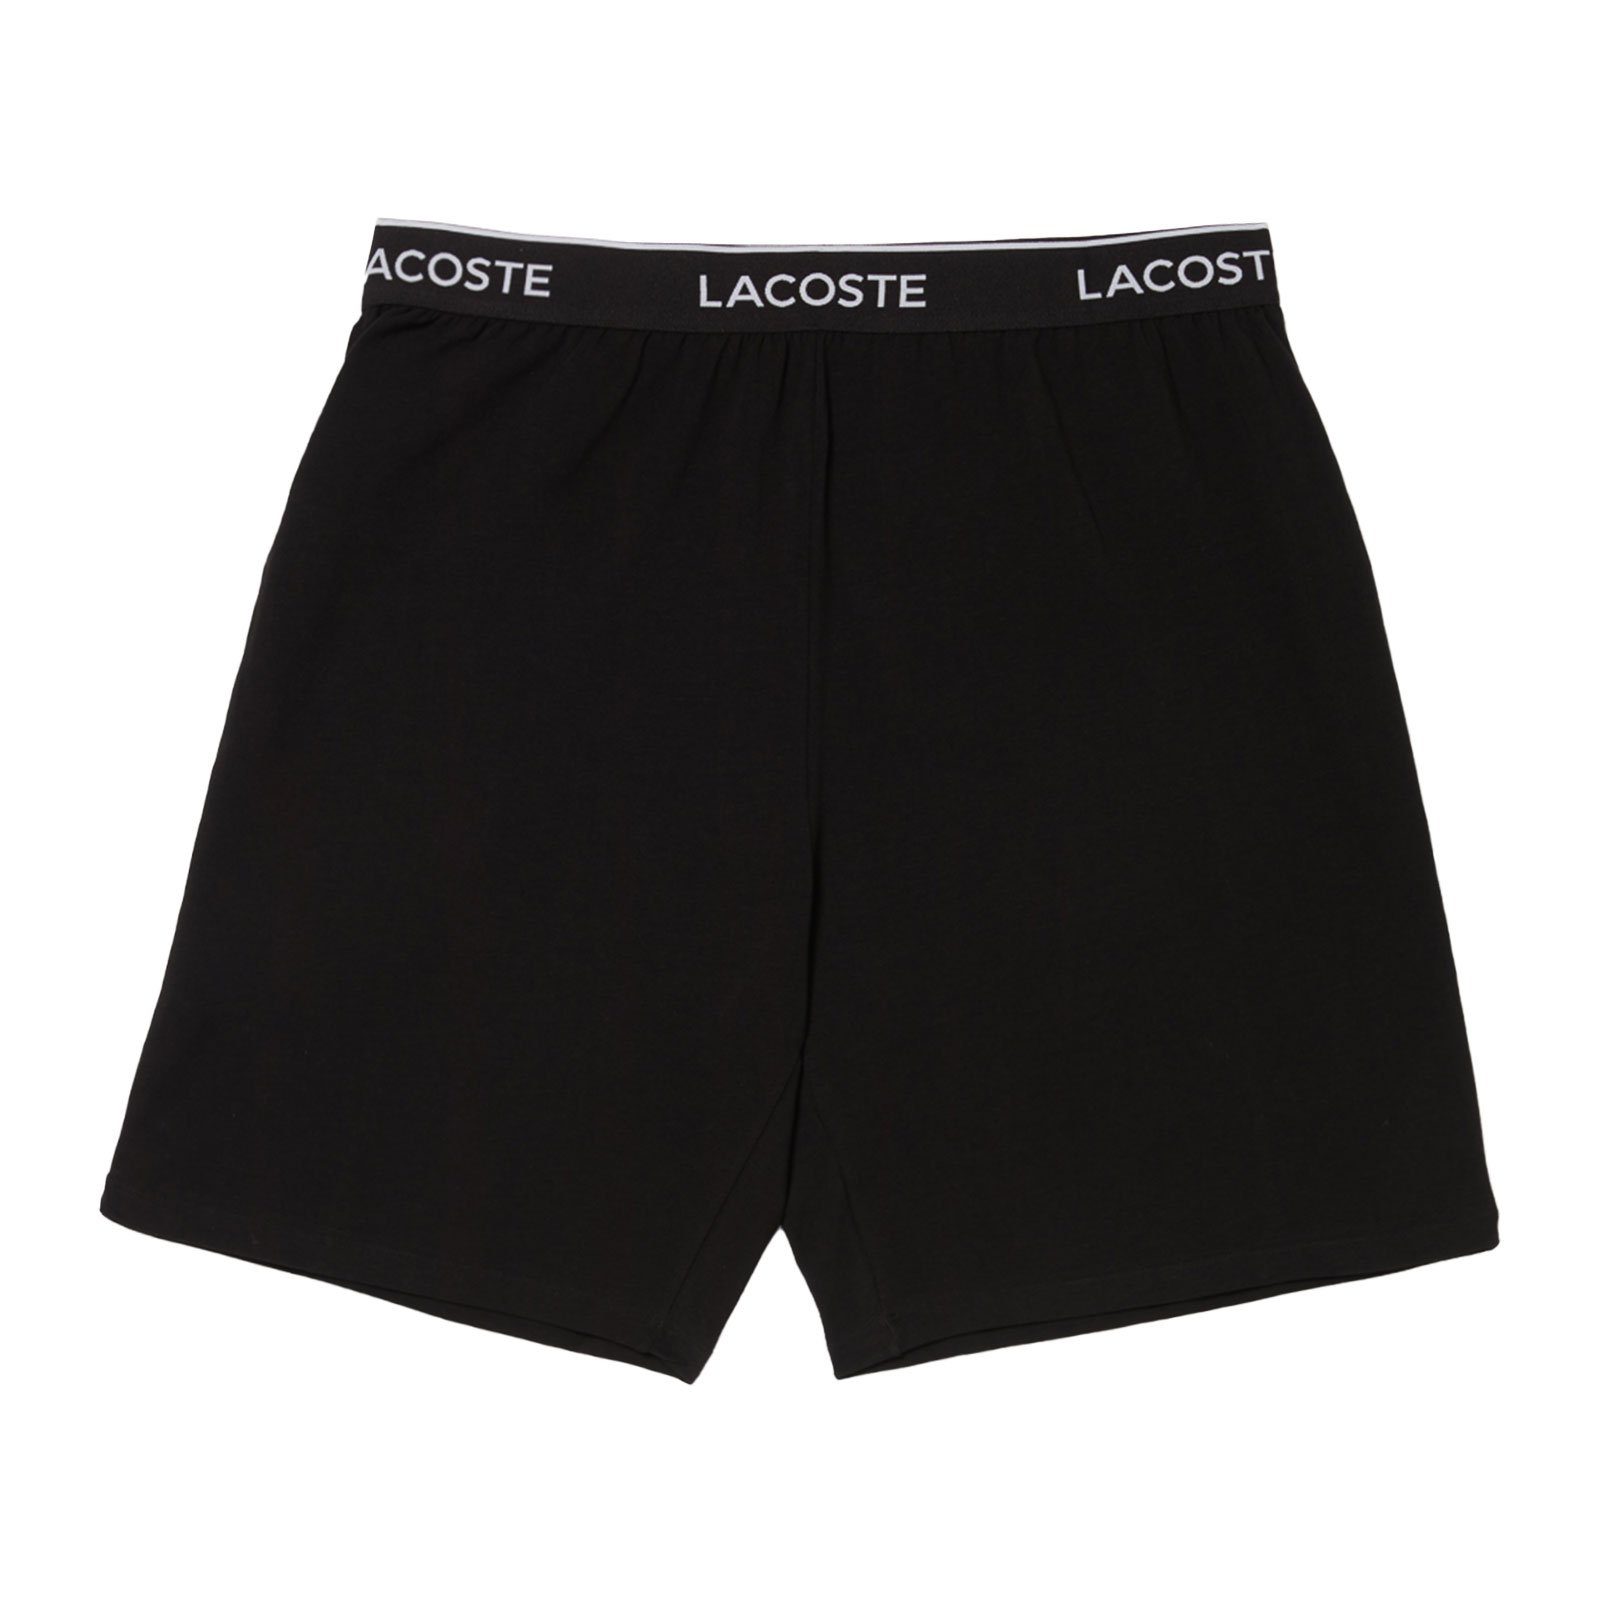 Lacoste Pyjamashorts Loungewear Shorts mit umlaufenden Markenschriftzug 031 noir